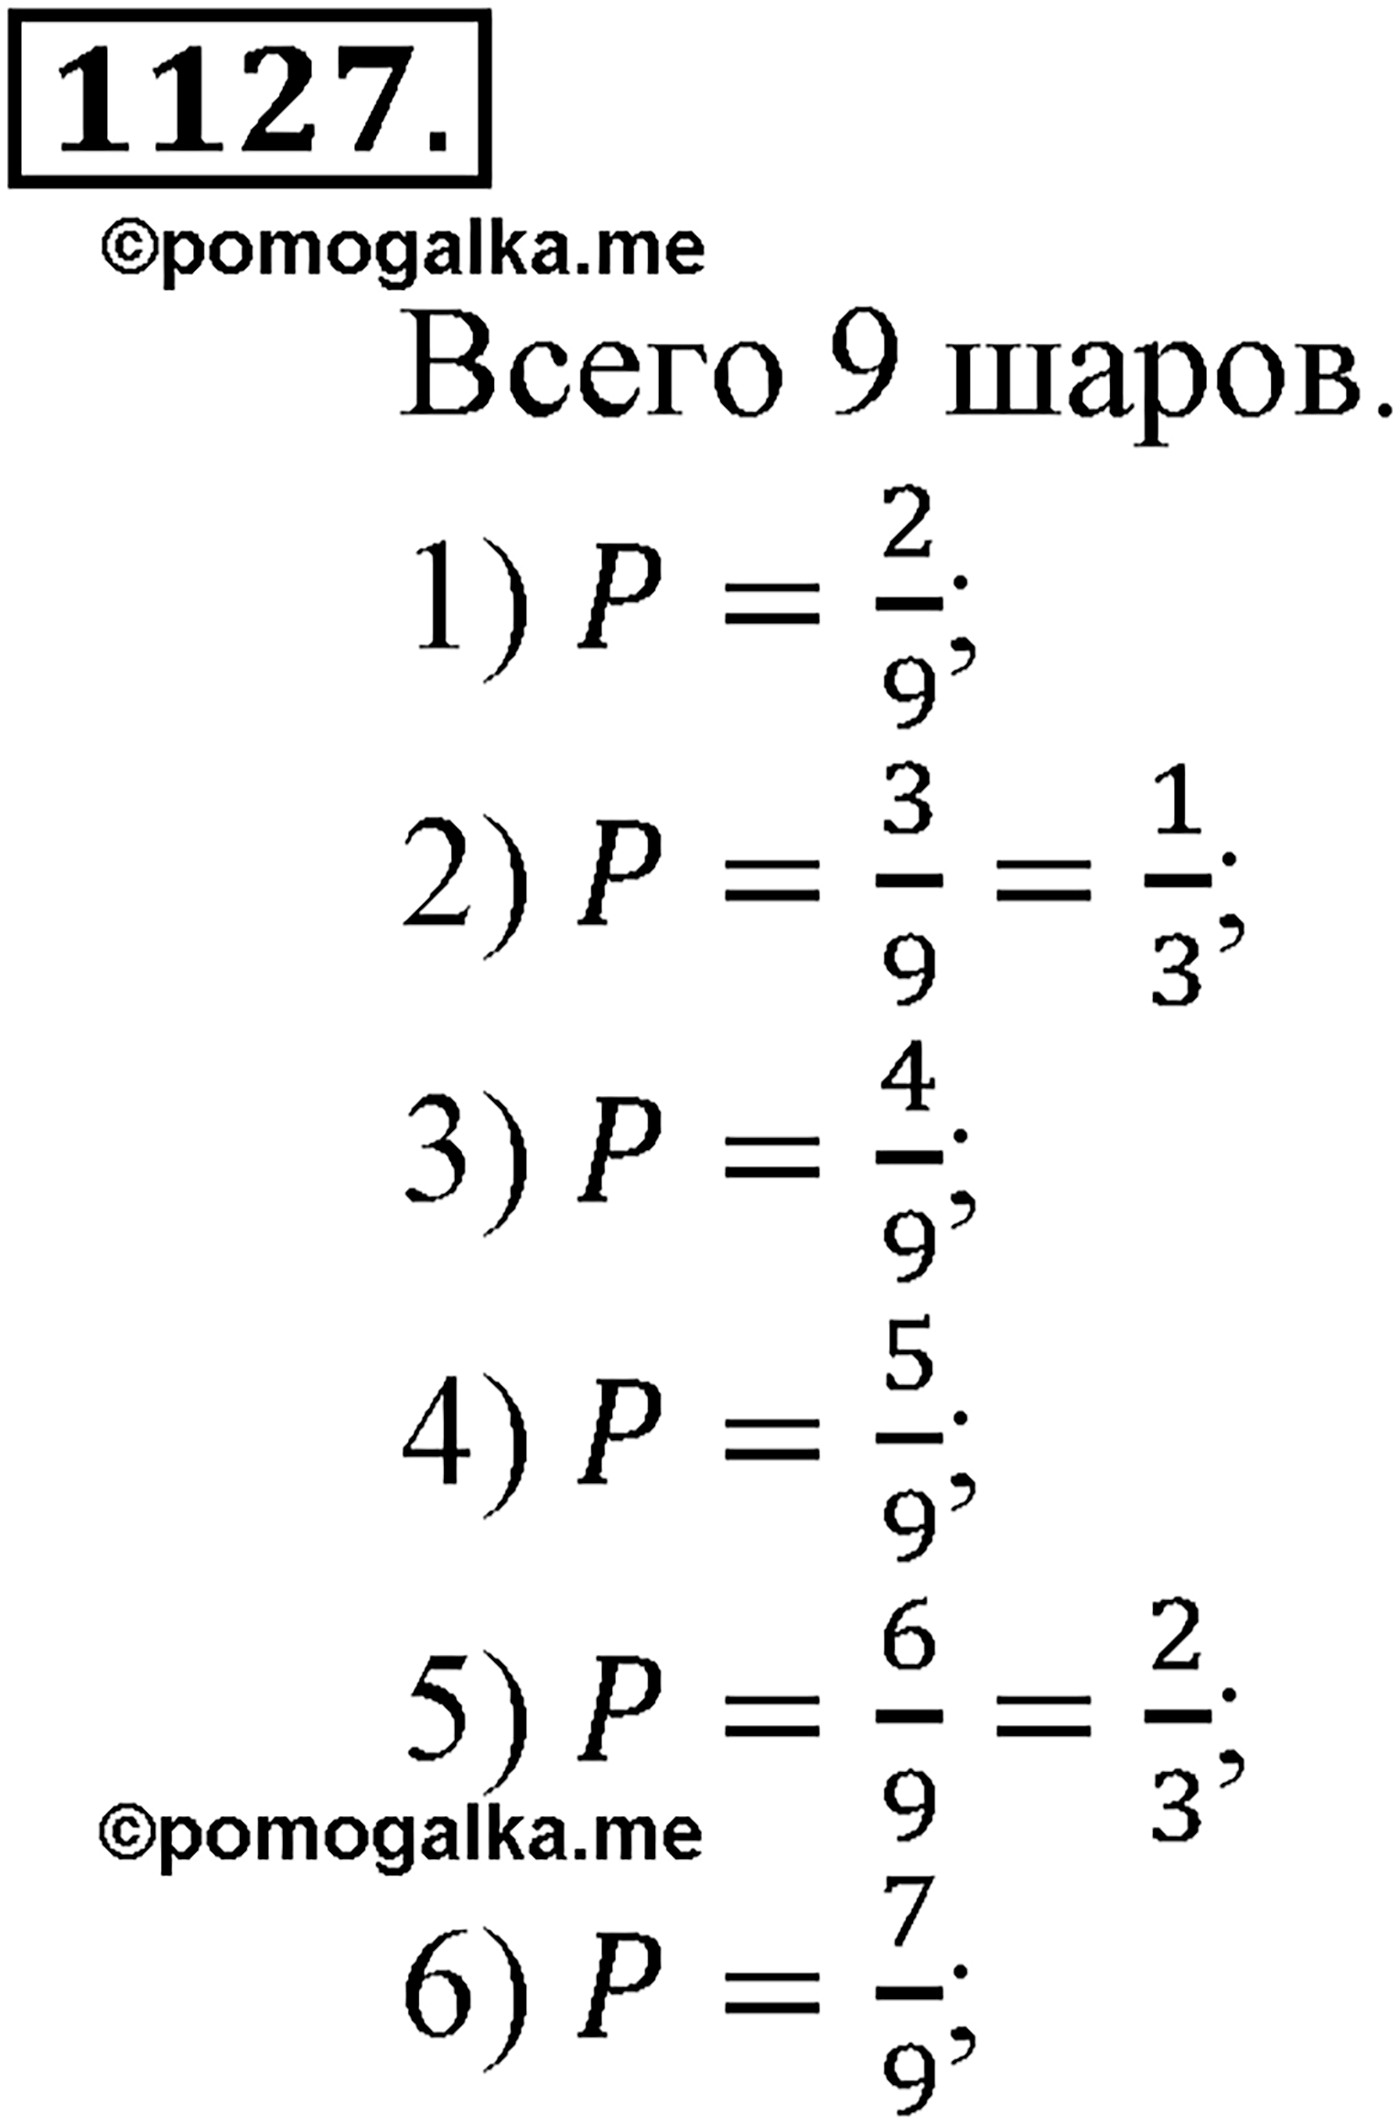 разбор задачи №1127 по алгебре за 10-11 класс из учебника Алимова, Колягина